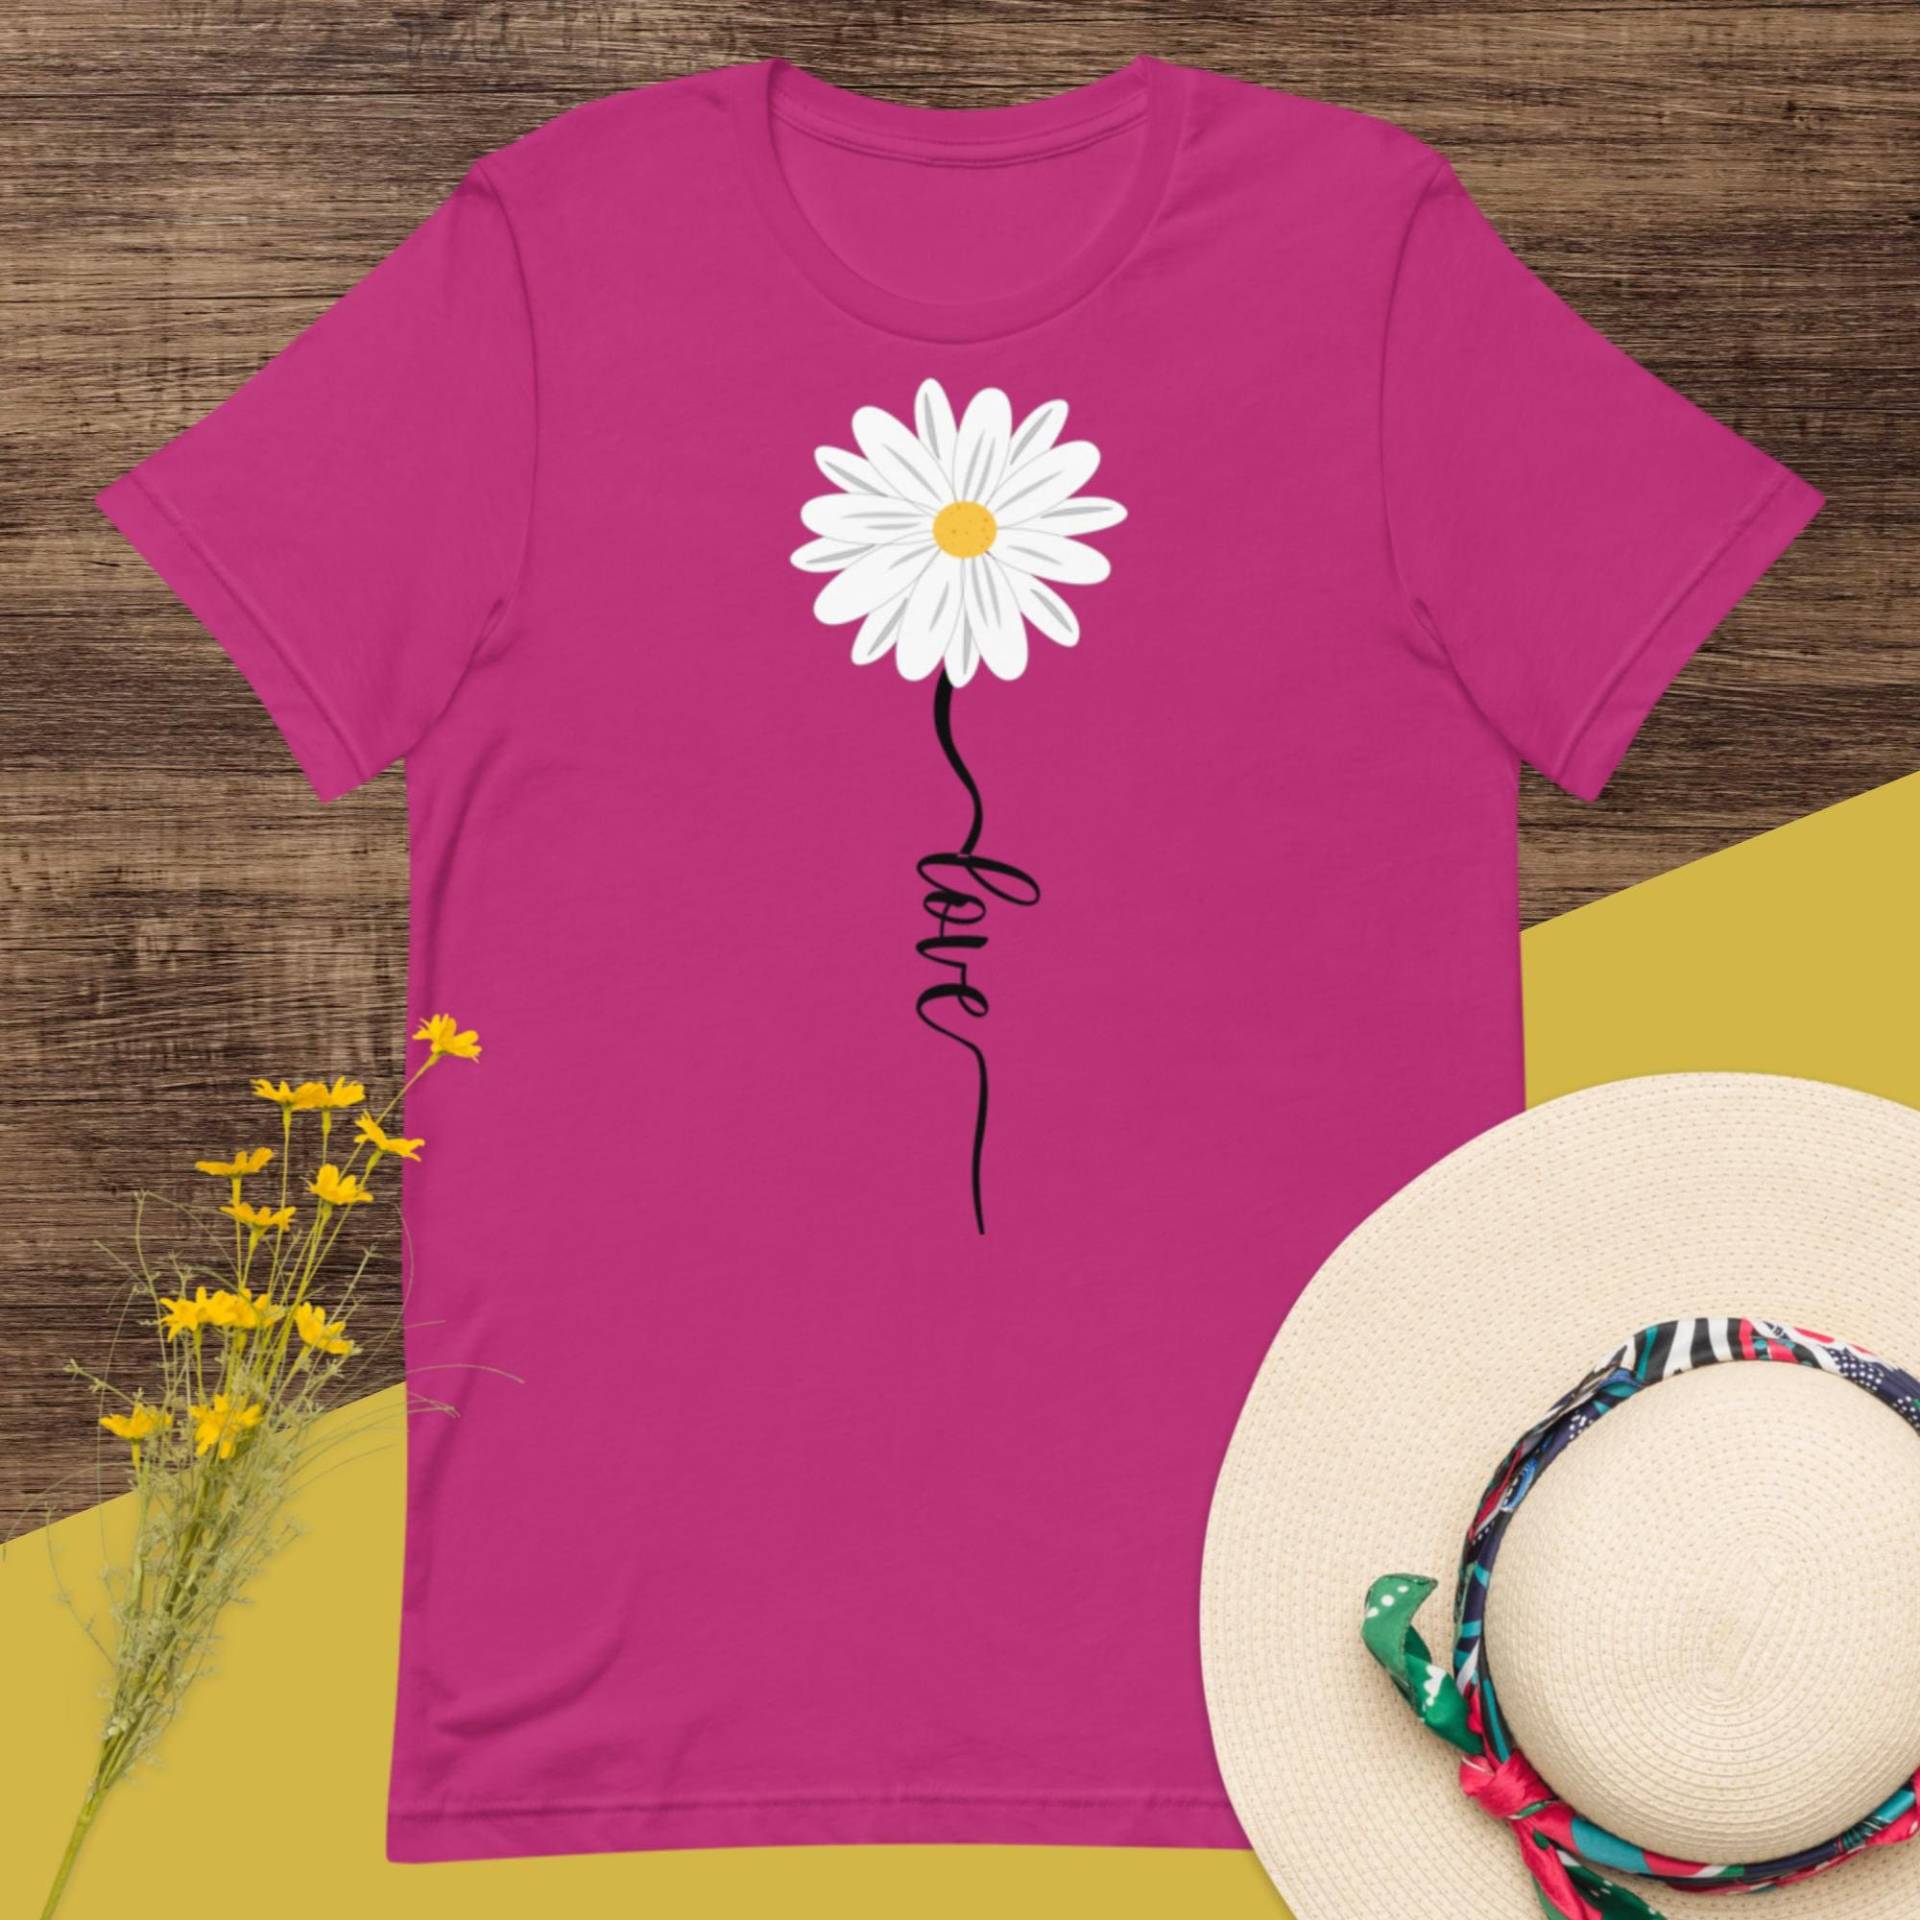 Liebe T-Shirt, Gänseblümchen-T-Shirt, Frauen-T-Shirt, Blumen-T-Shirt, Frühlings-T-Shirt, Boho-T-Shirt, Vintage-T-Shirt von tracysflorals